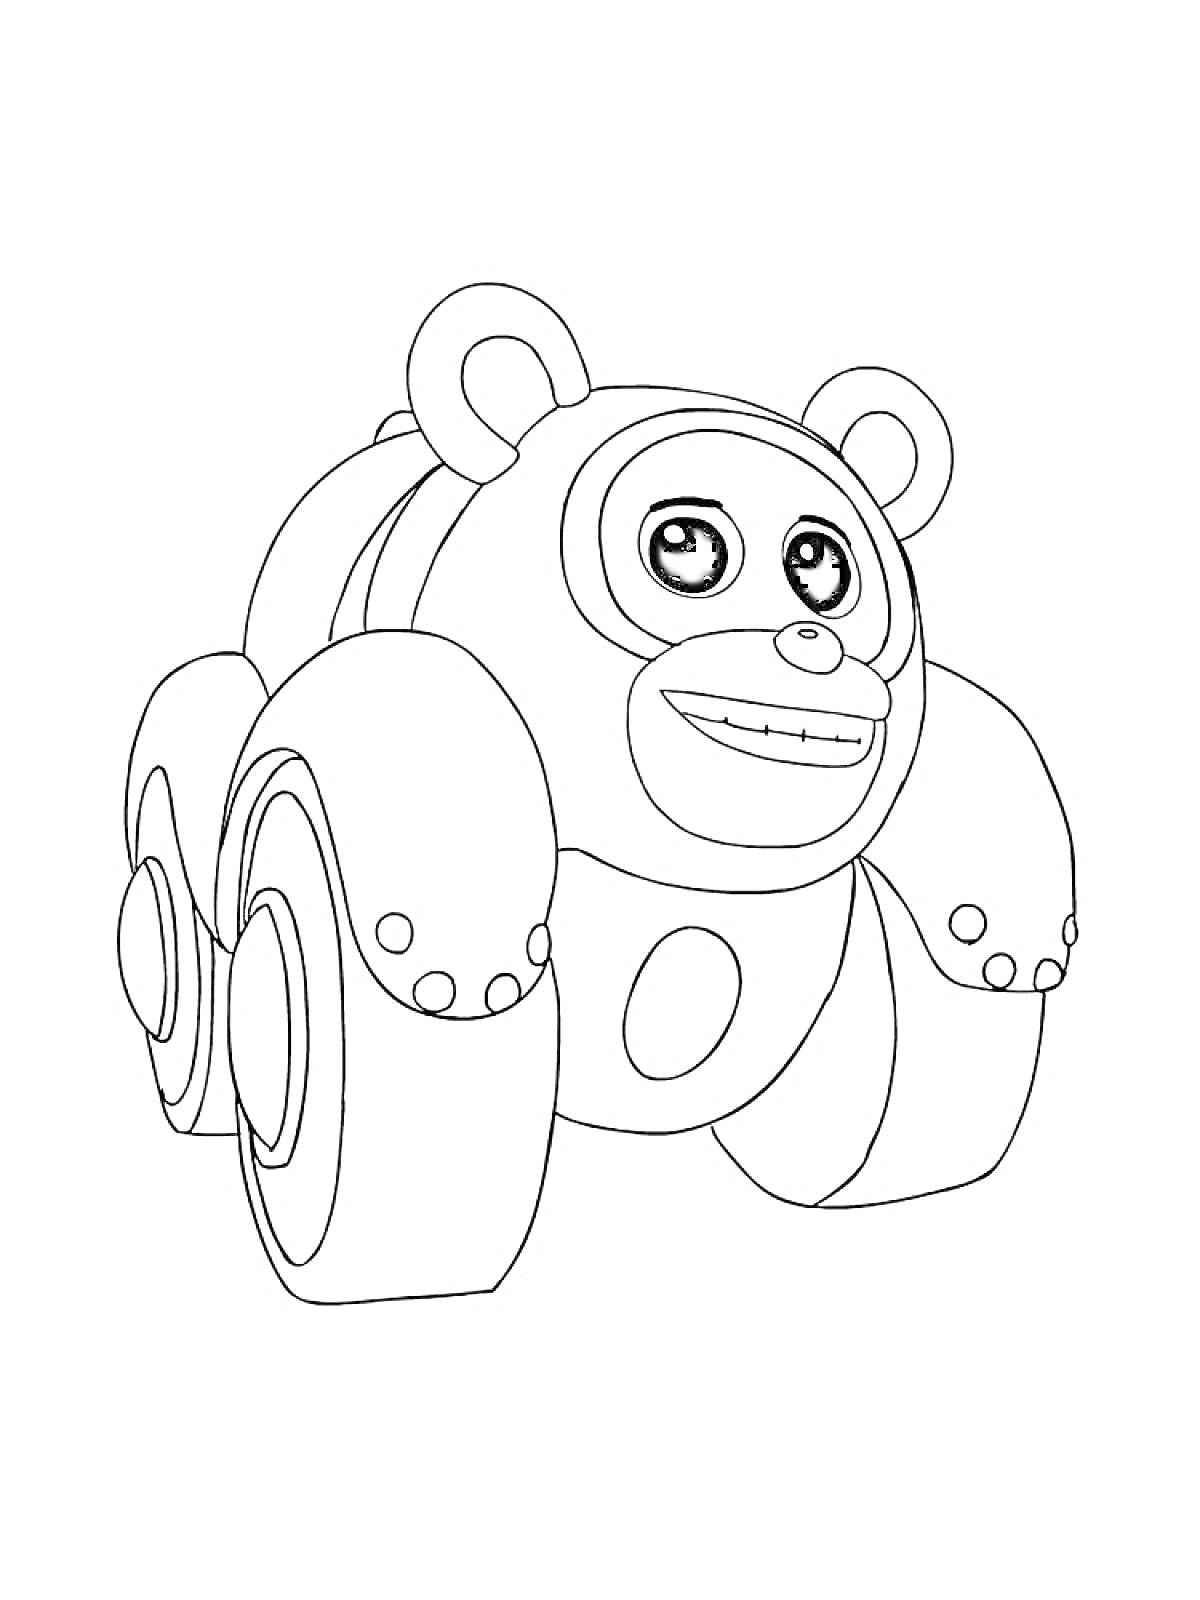 Раскраска Медведь на колесах из мультфильма 